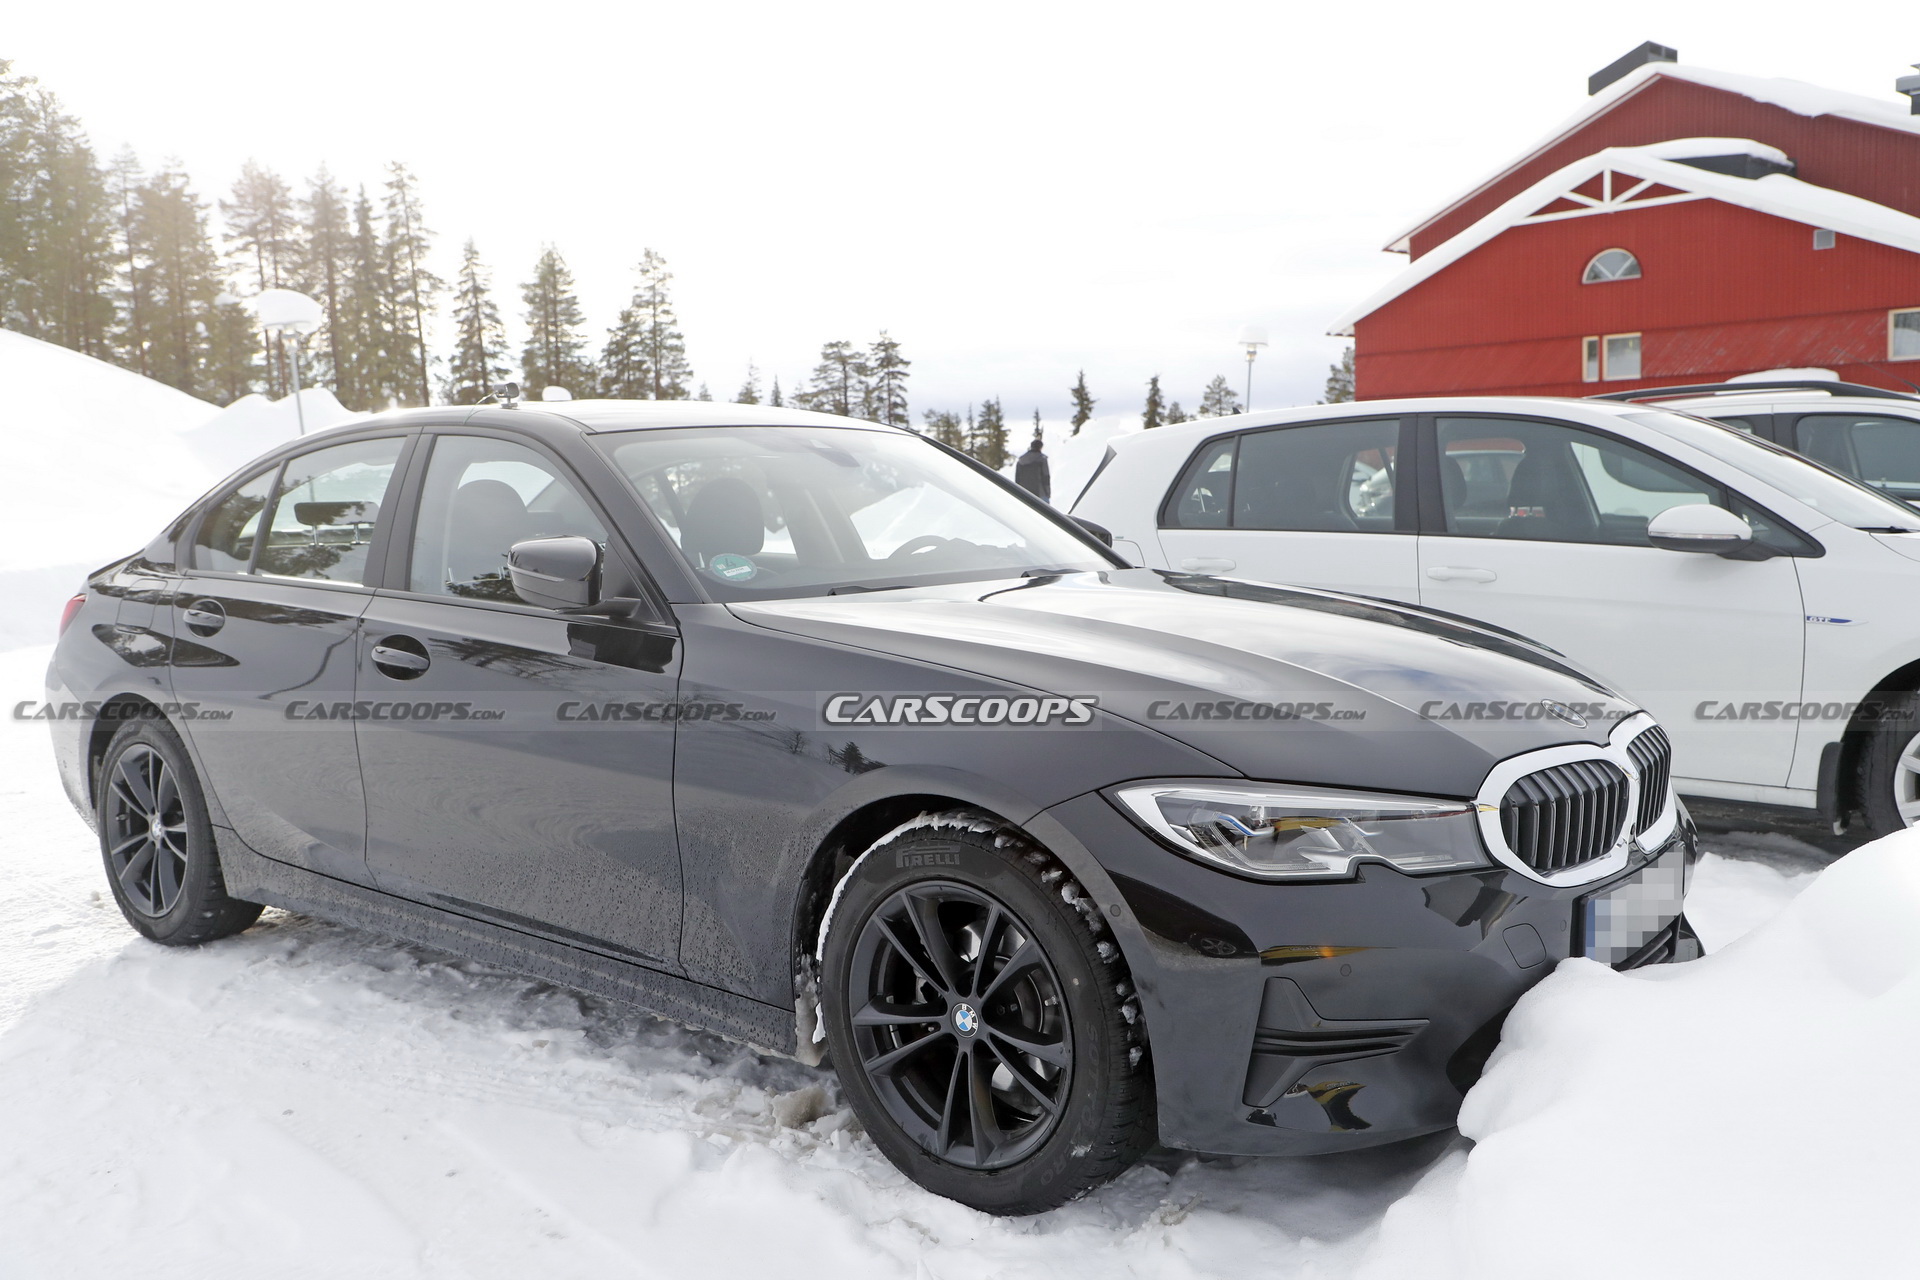 BMW 3-Series nâng cấp lộ nội thất mới với màn hình cong 2022-bmw-3-series-facelift-scoop-04.jpg